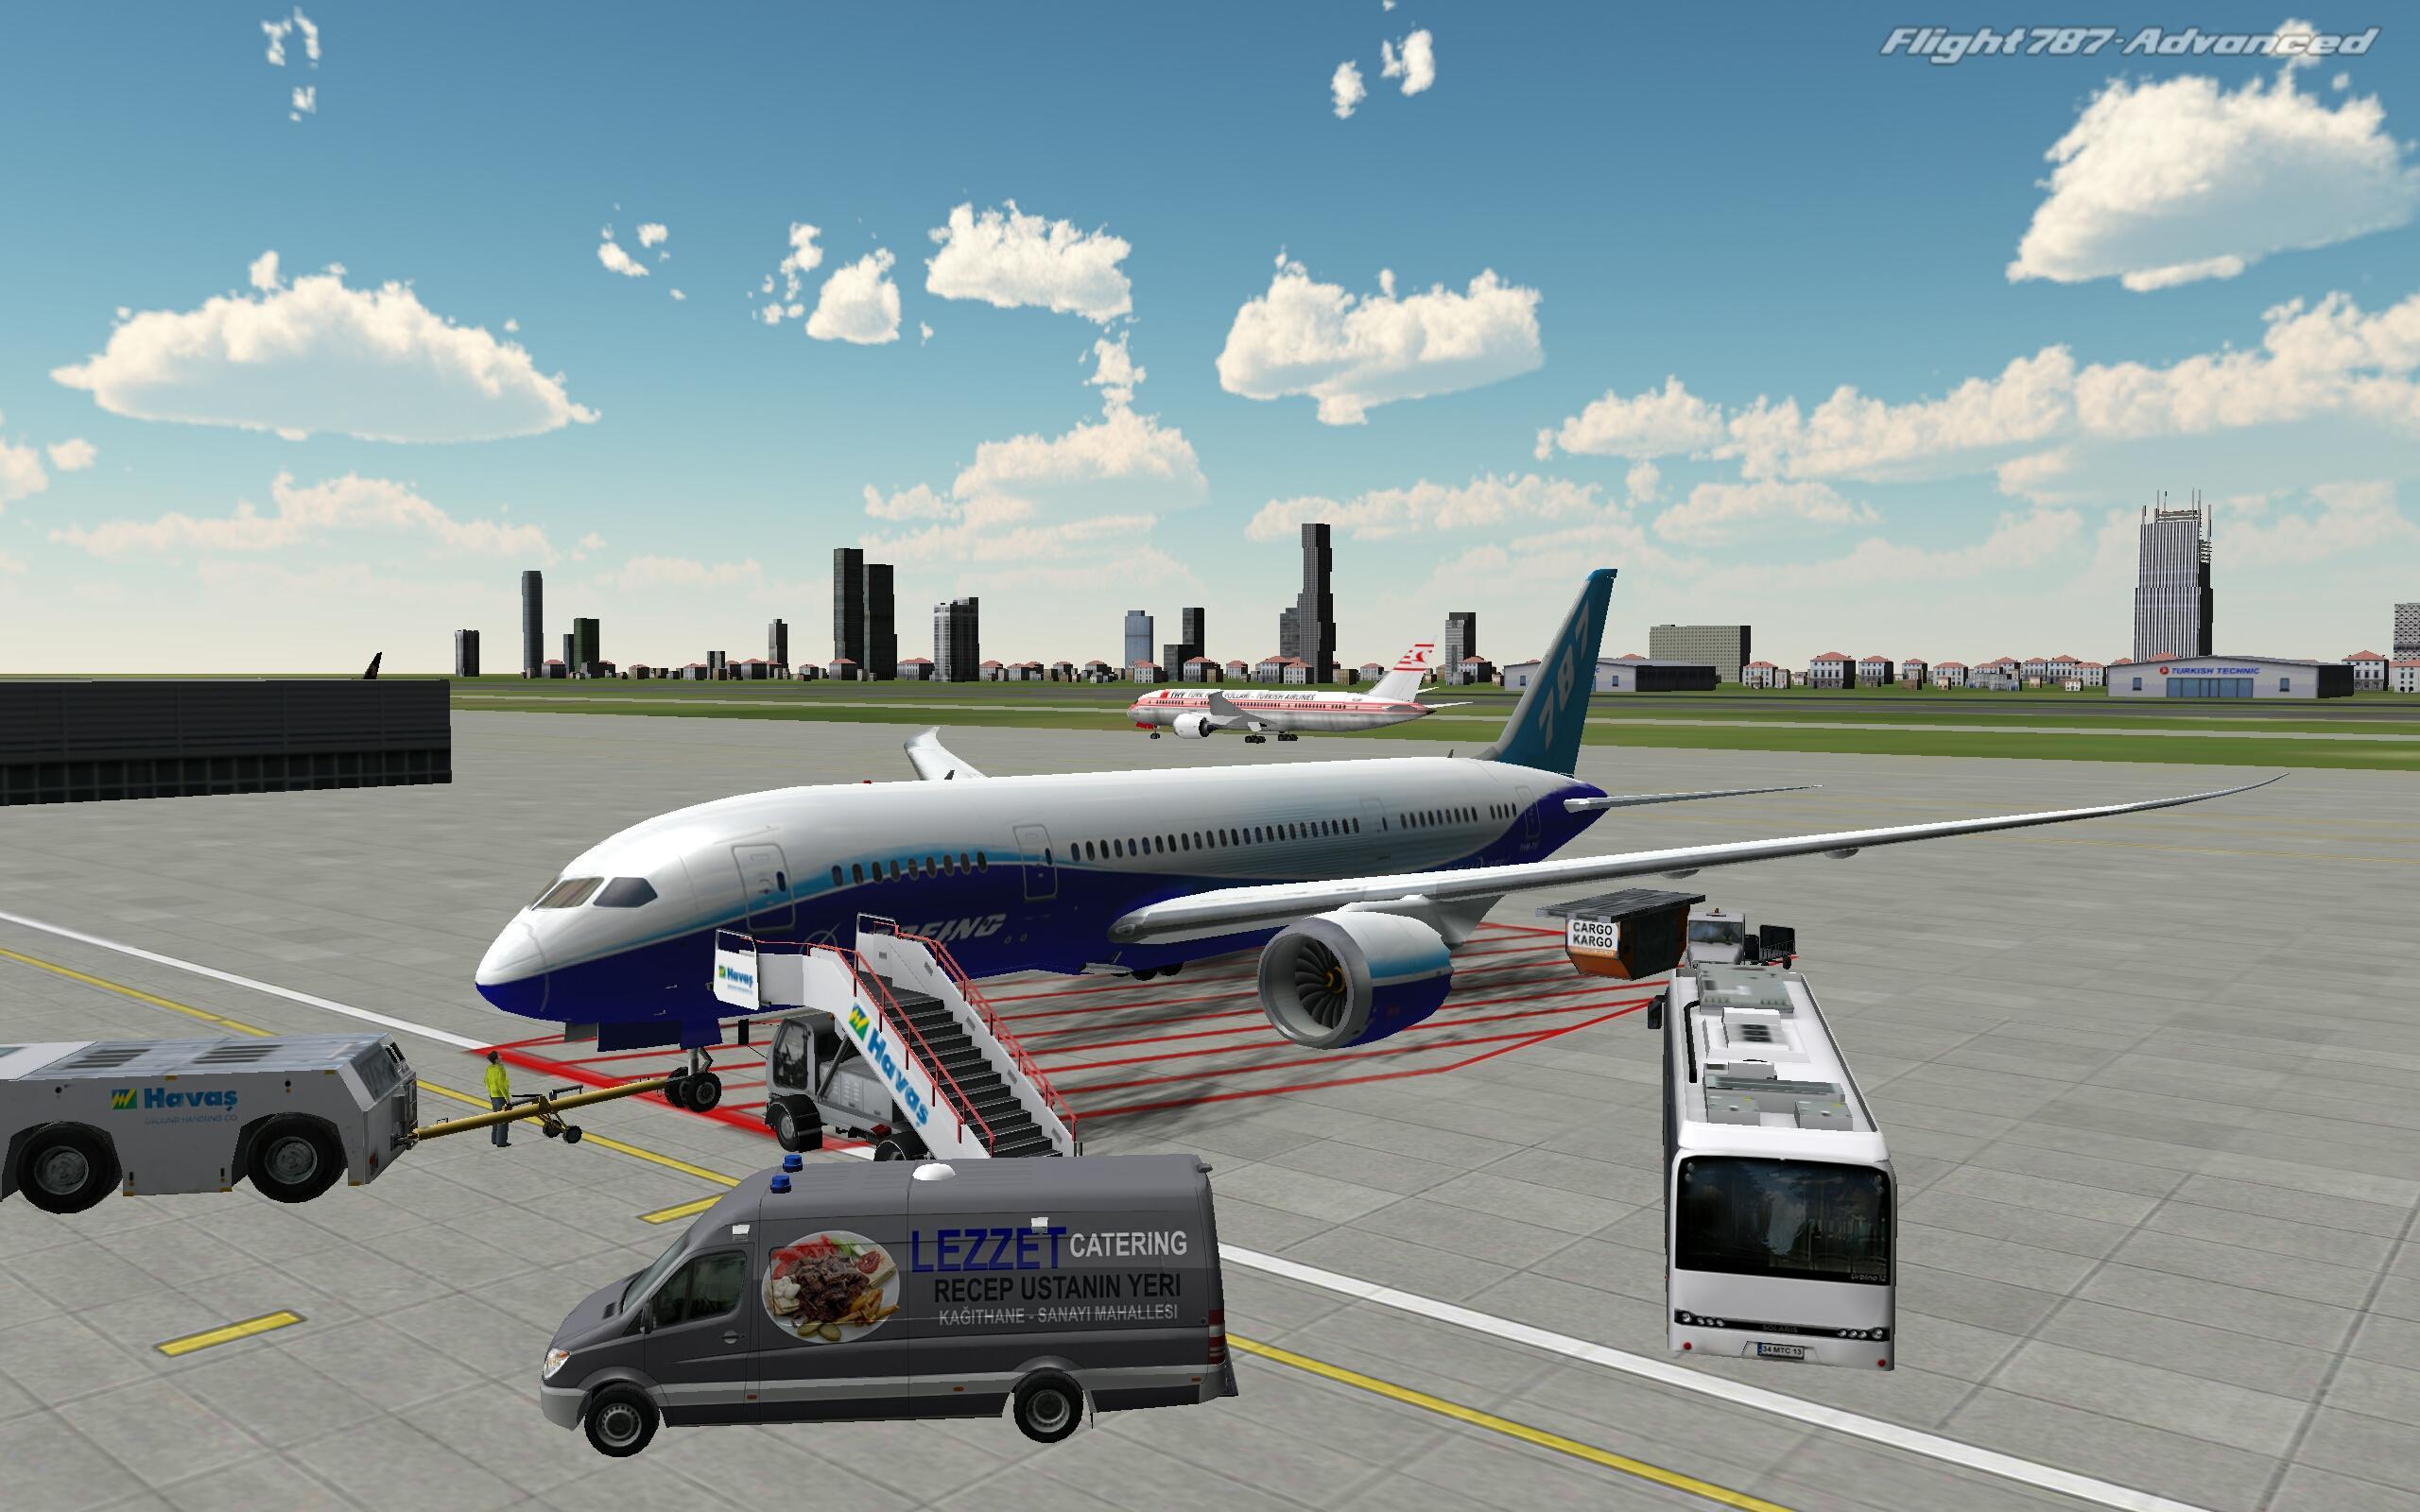 Новая игра самолета. Flight 787 - Advanced. Реал Флайт симулятор. Авиасимулятор ВДНХ. Симулятор самолета пассажирского.